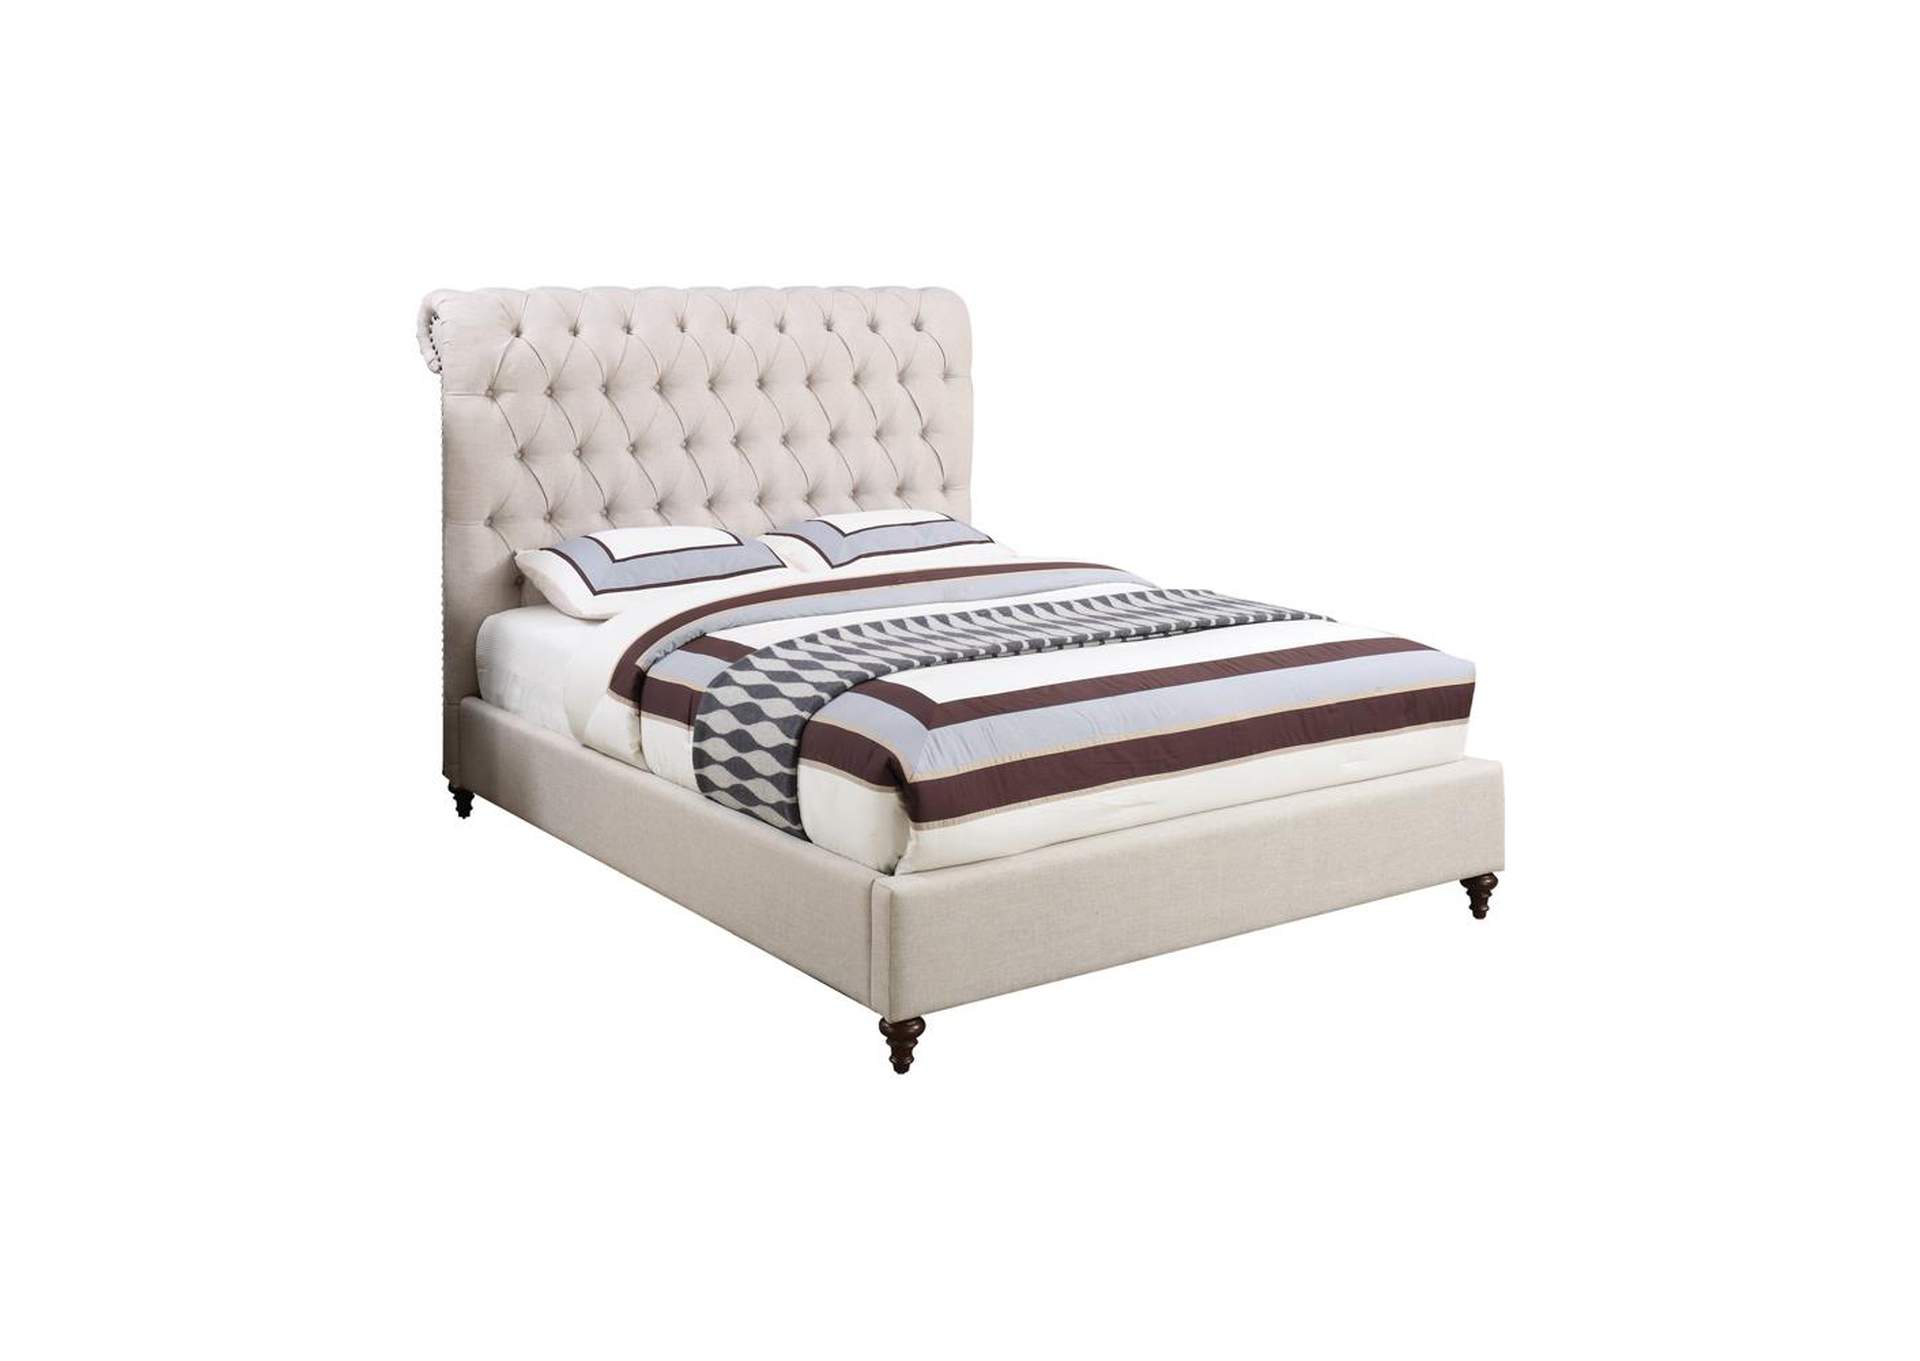 Swirl Devon Transitional Beige Queen Bed,Coaster Furniture